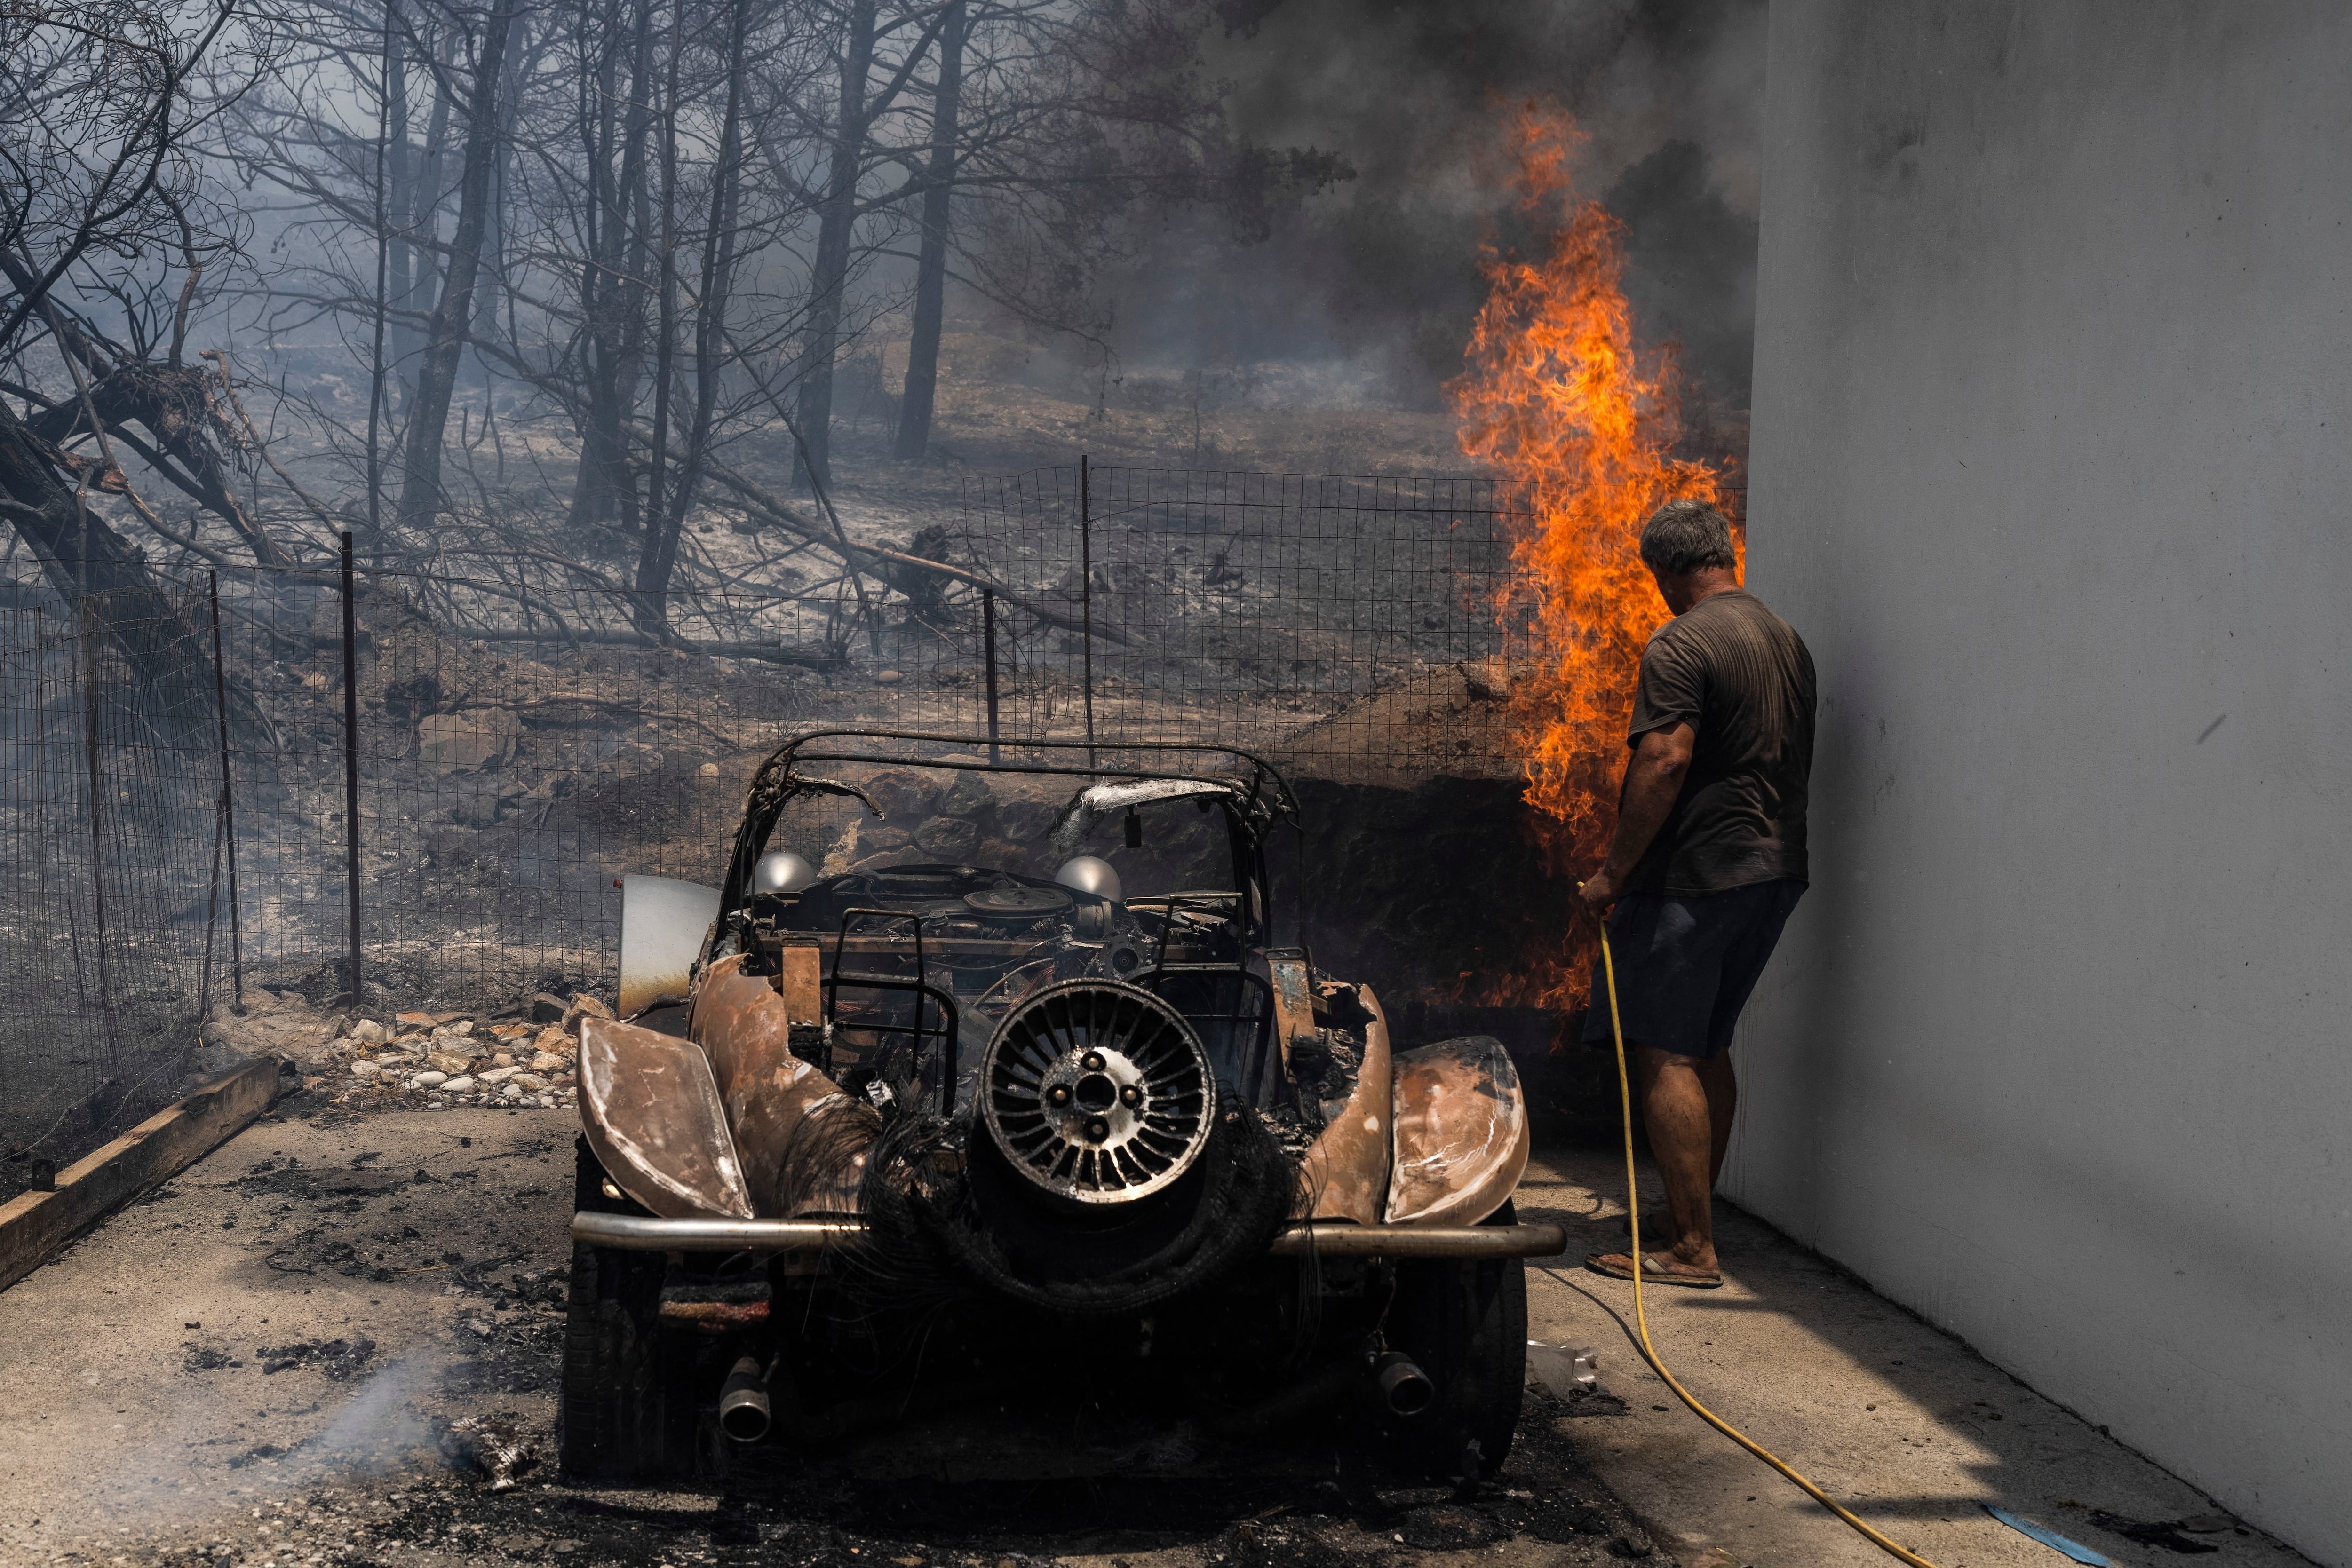 Un residente trata de apagar un fuego en el patio de una casa, junto a un auto calcinado. (AP Foto/Petros Giannakouris)